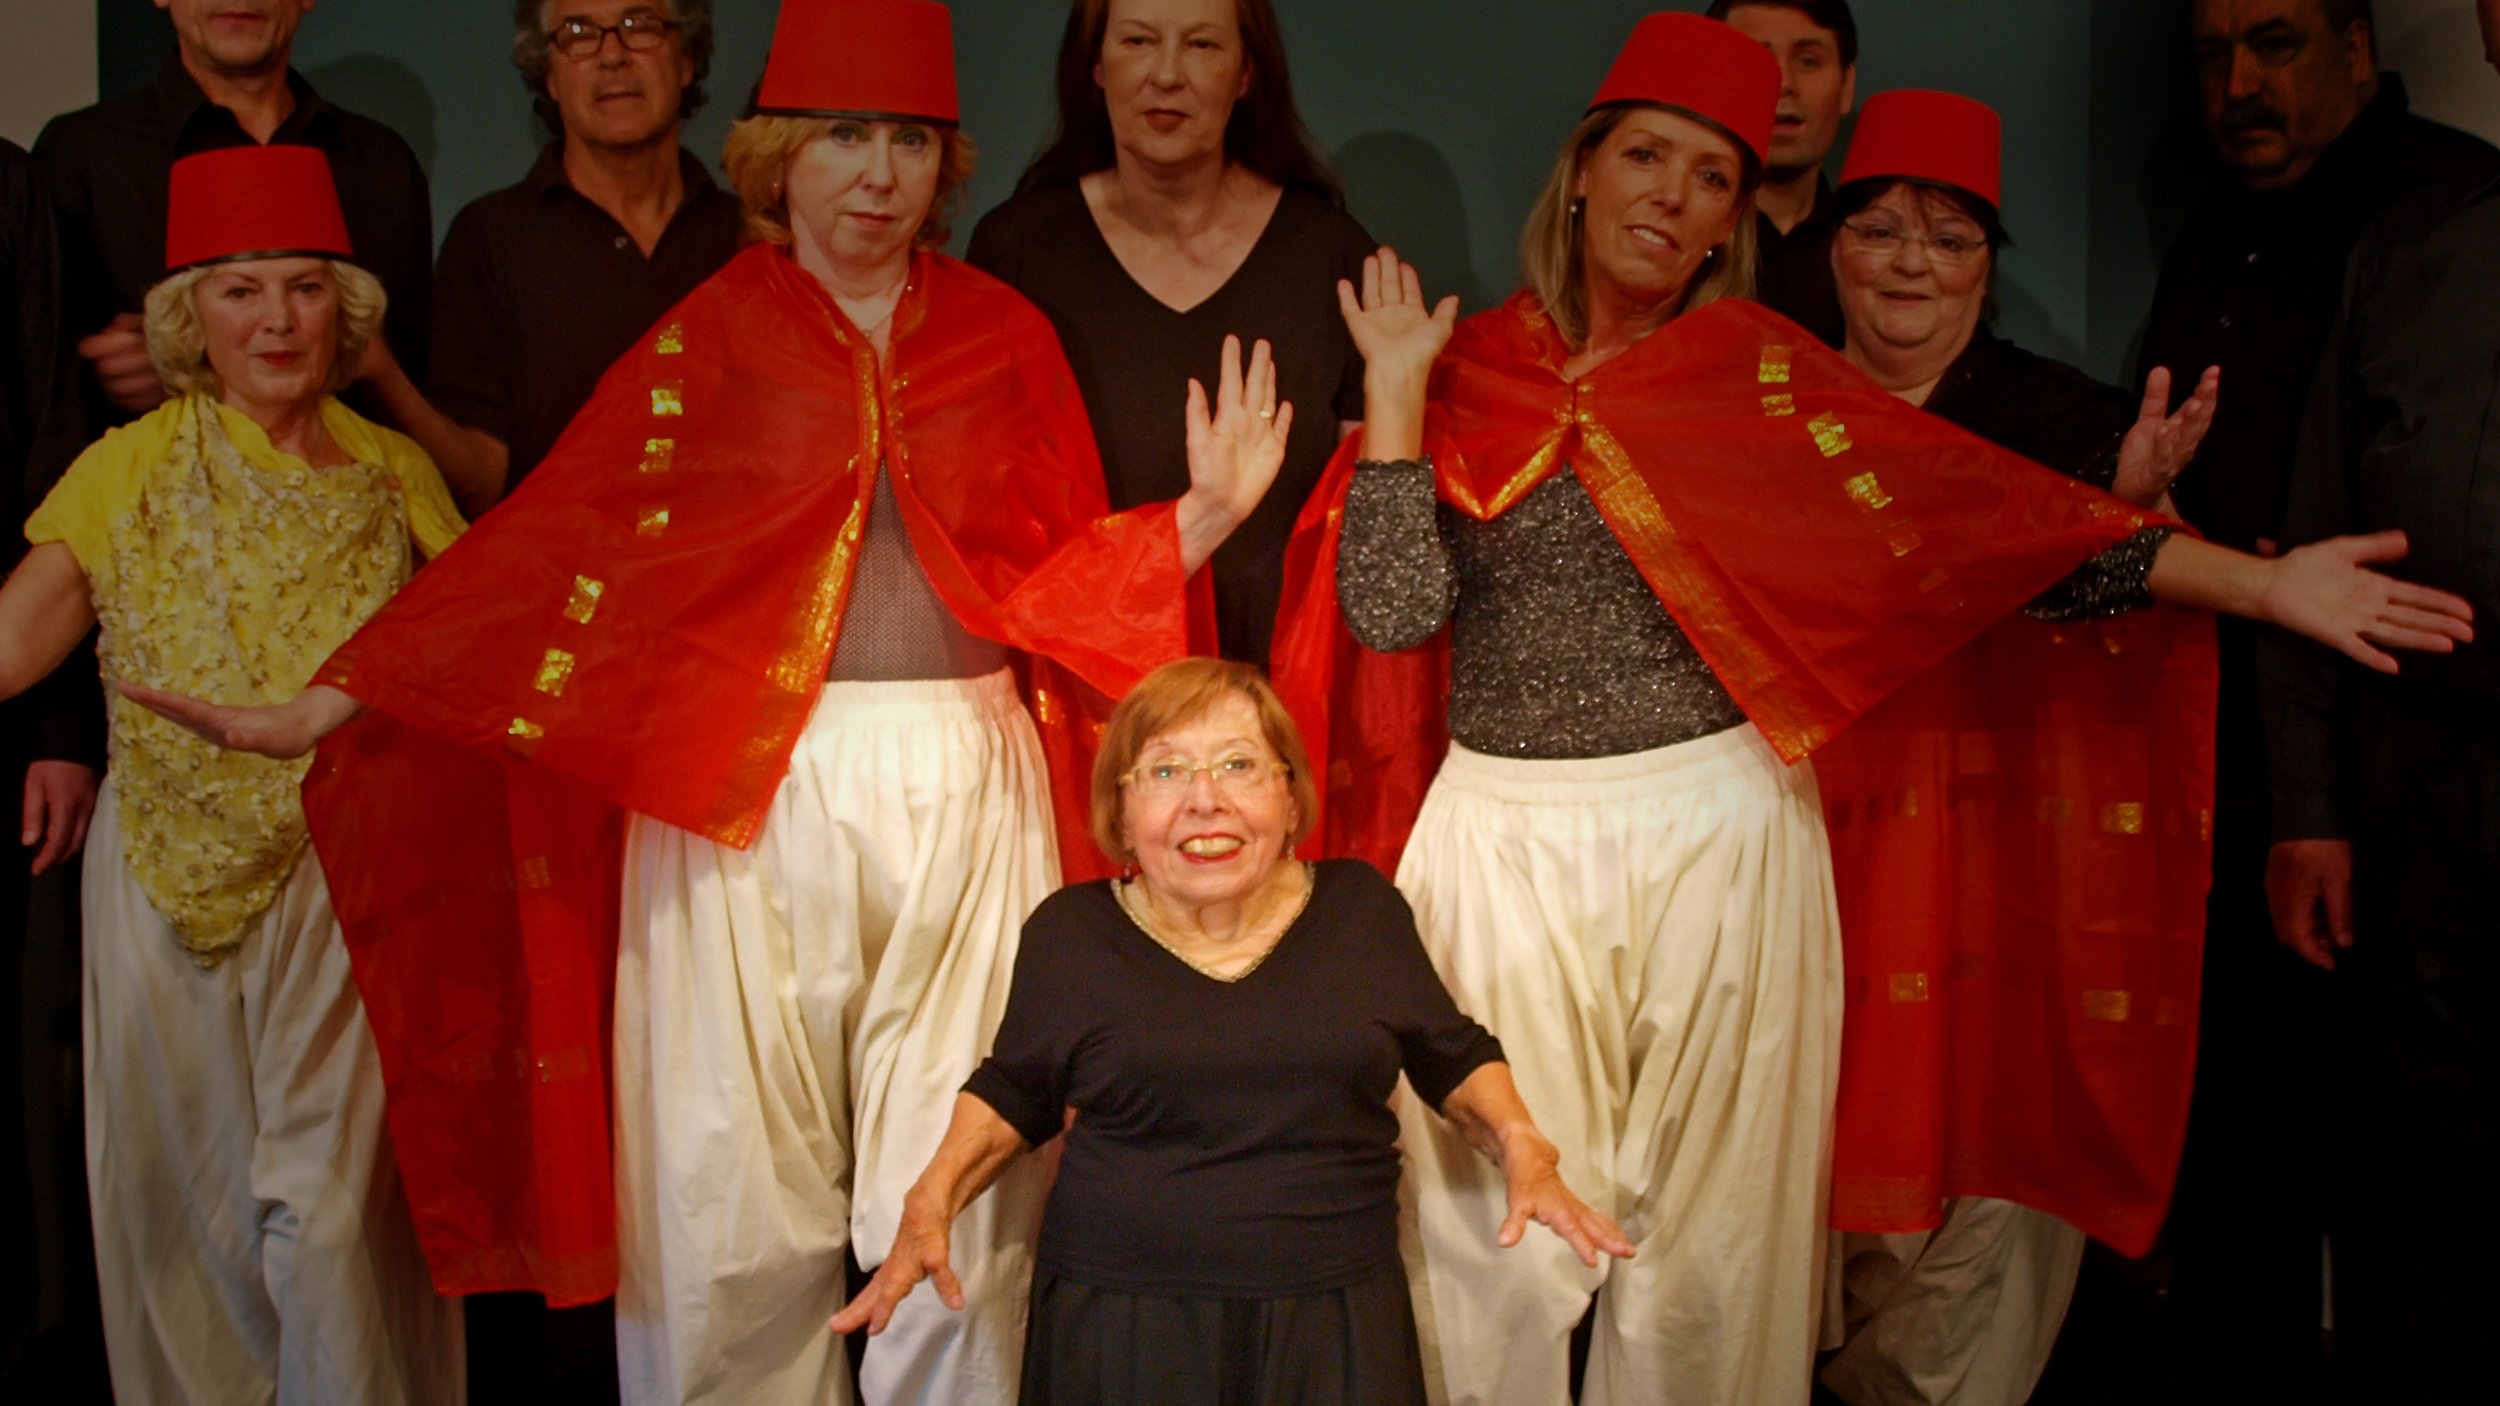 Foto: Gruppenbild der weiblichen Mitglieder der Theatergruppe der FDST in orientalischen Kostümen, circa 2010, in der Mitte Ingrid Koch